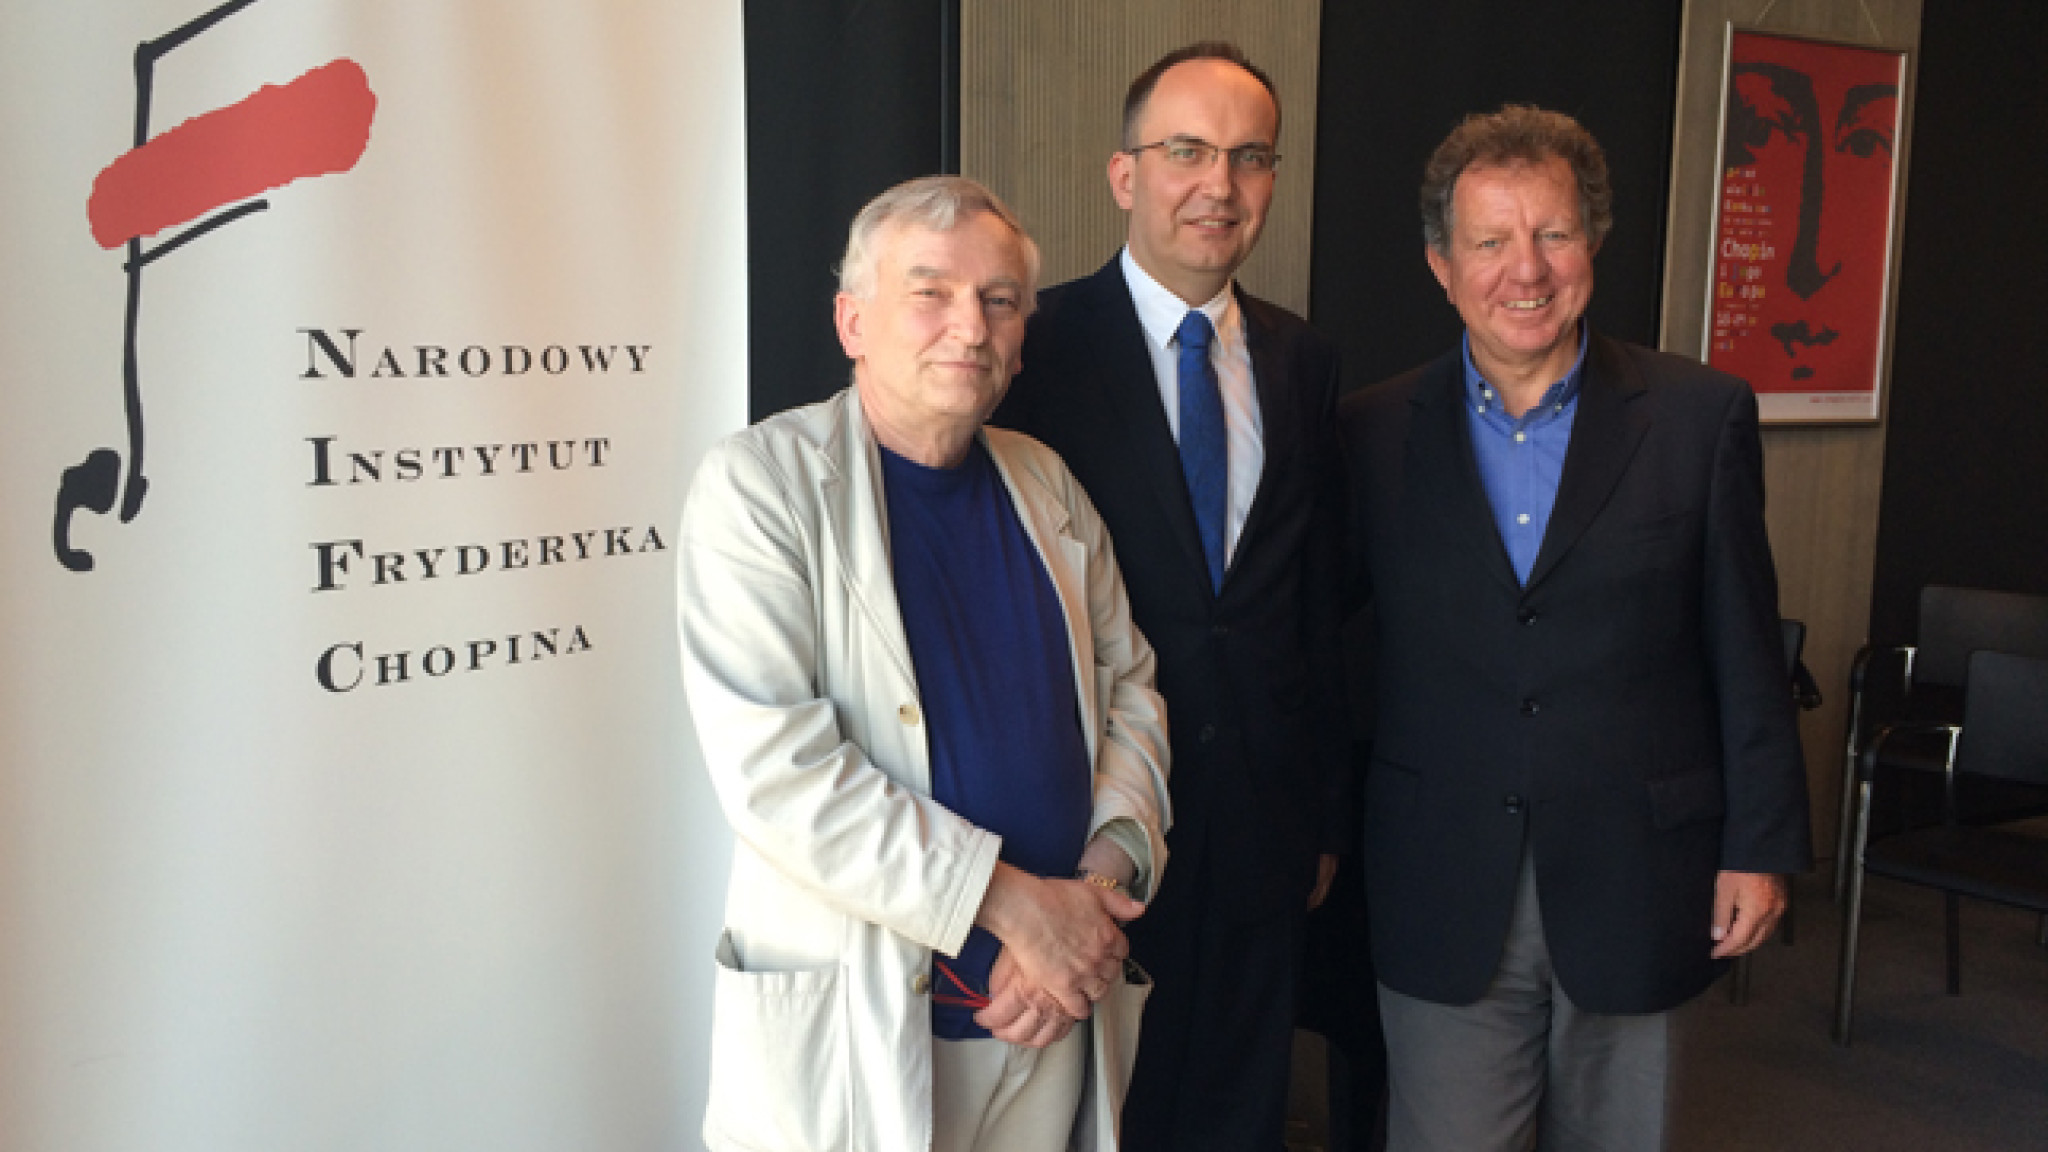 Historische Partnerschaft – Deutsche Grammophon und Chopin Institut kündigen Zusammenarbeit an